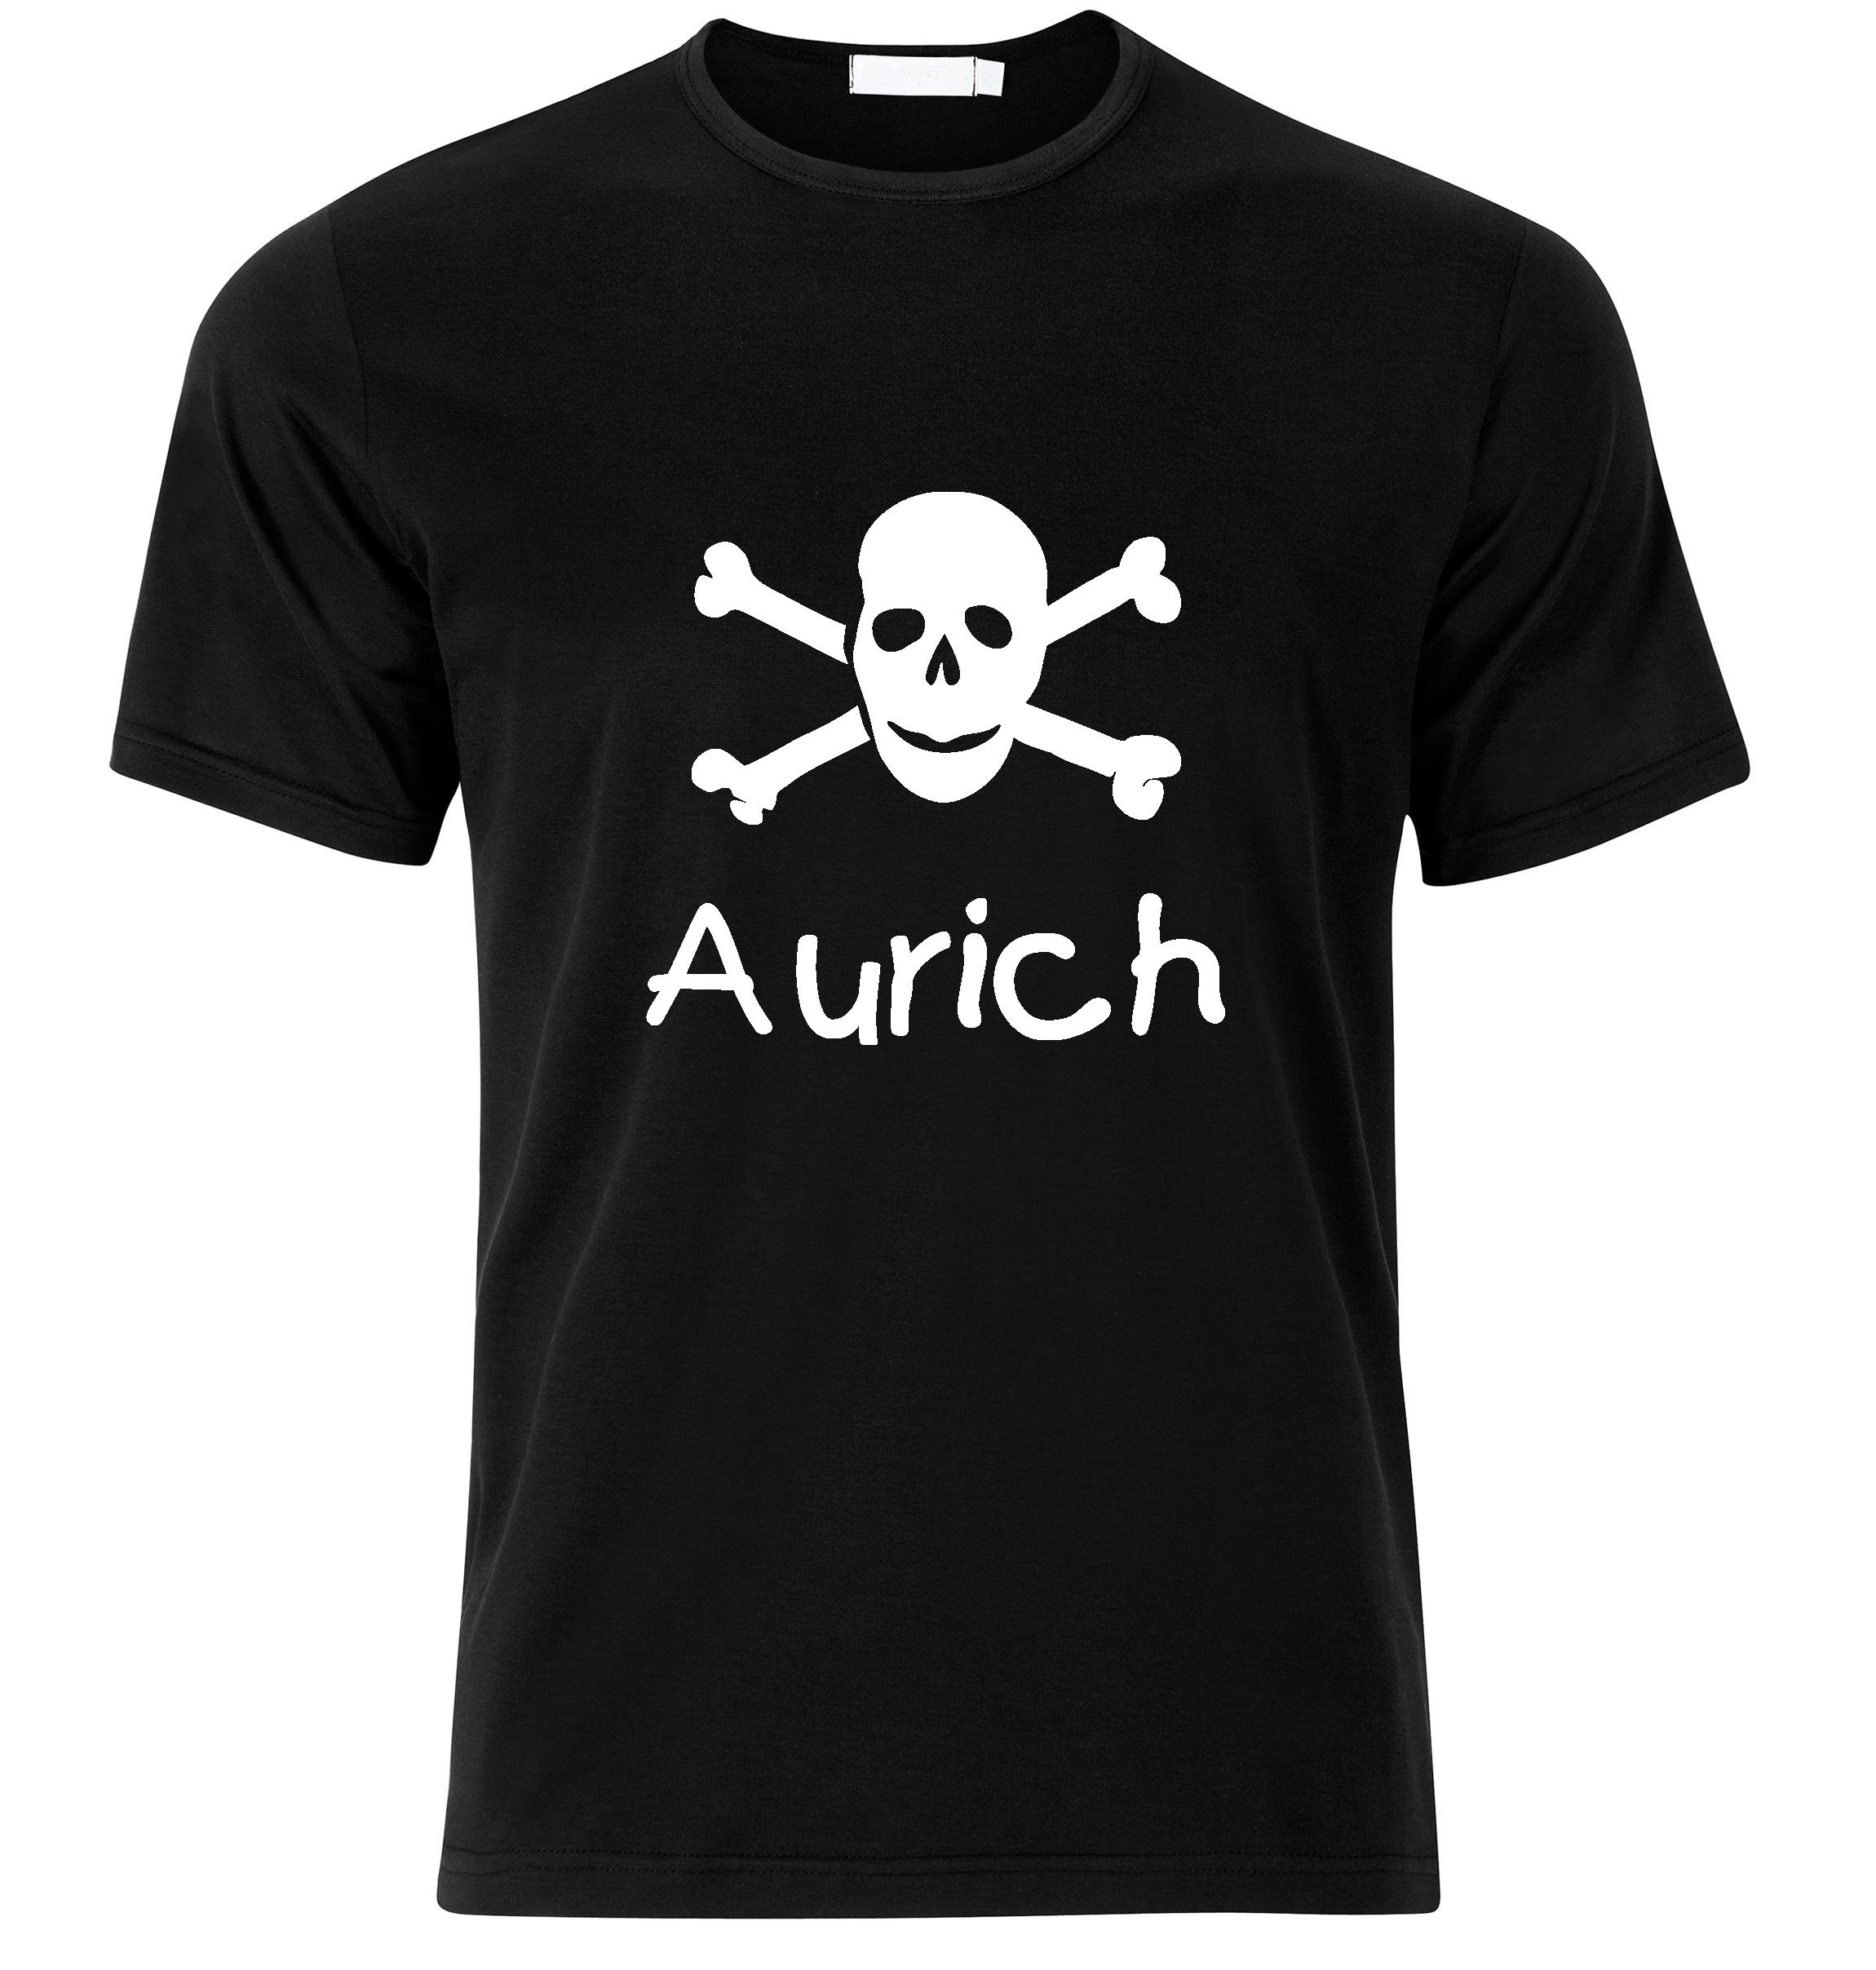 T-Shirt Aurich Jolly Roger, Totenkopf